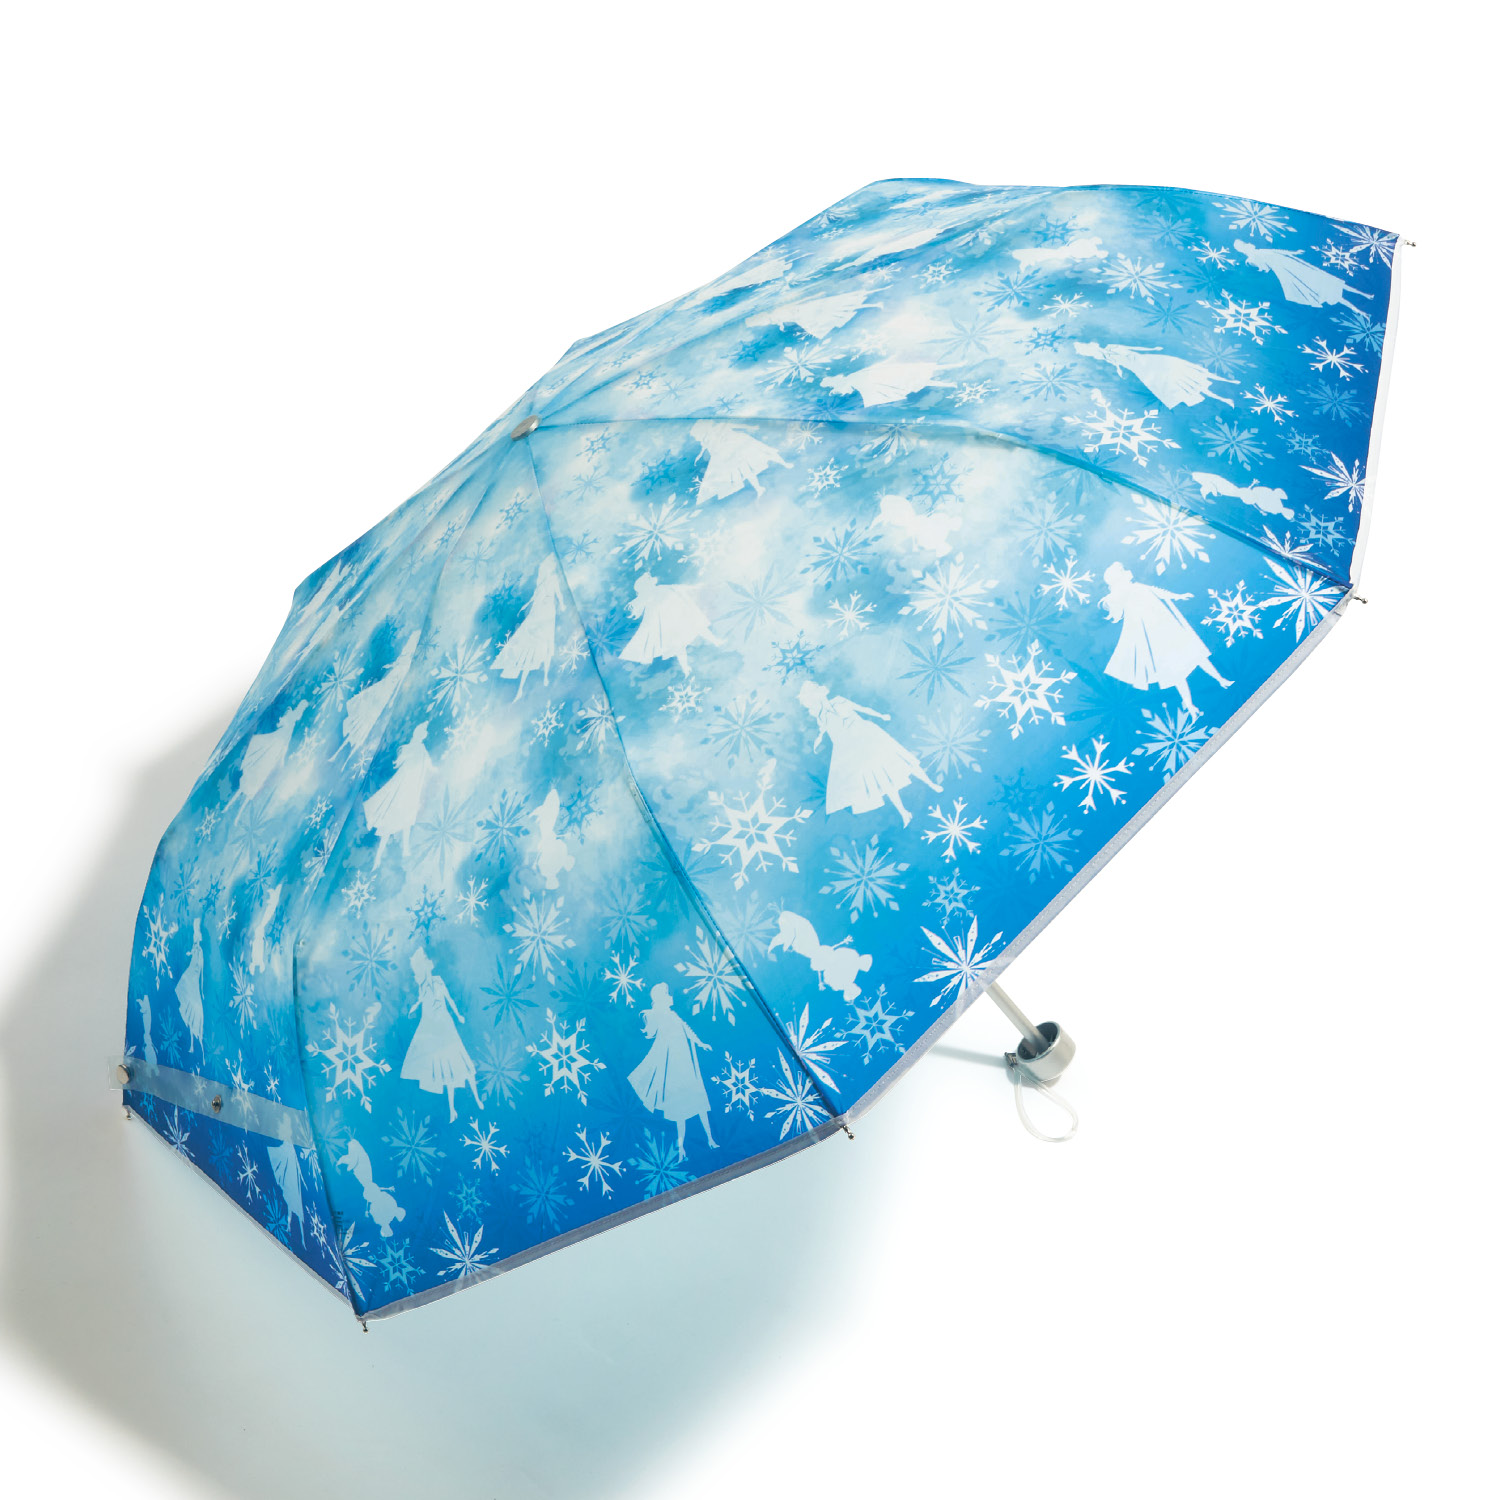 折りたたみ傘 ビニール傘 傘 雨具 レイングッズ レディース 女性 ファッショングッズ Disney...